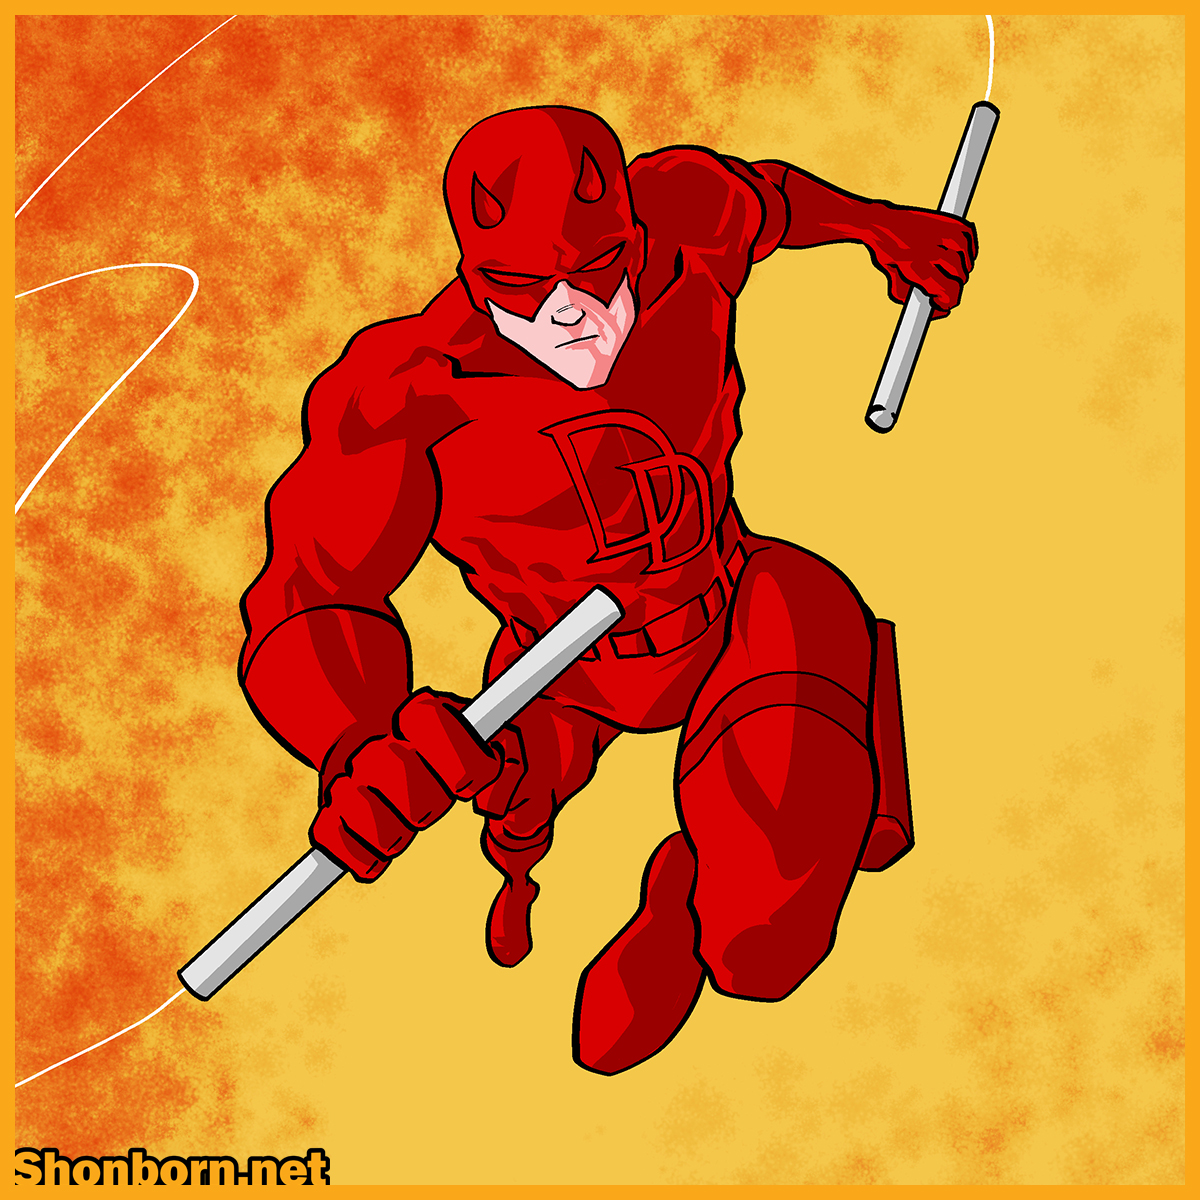 Daredevil/The Flash